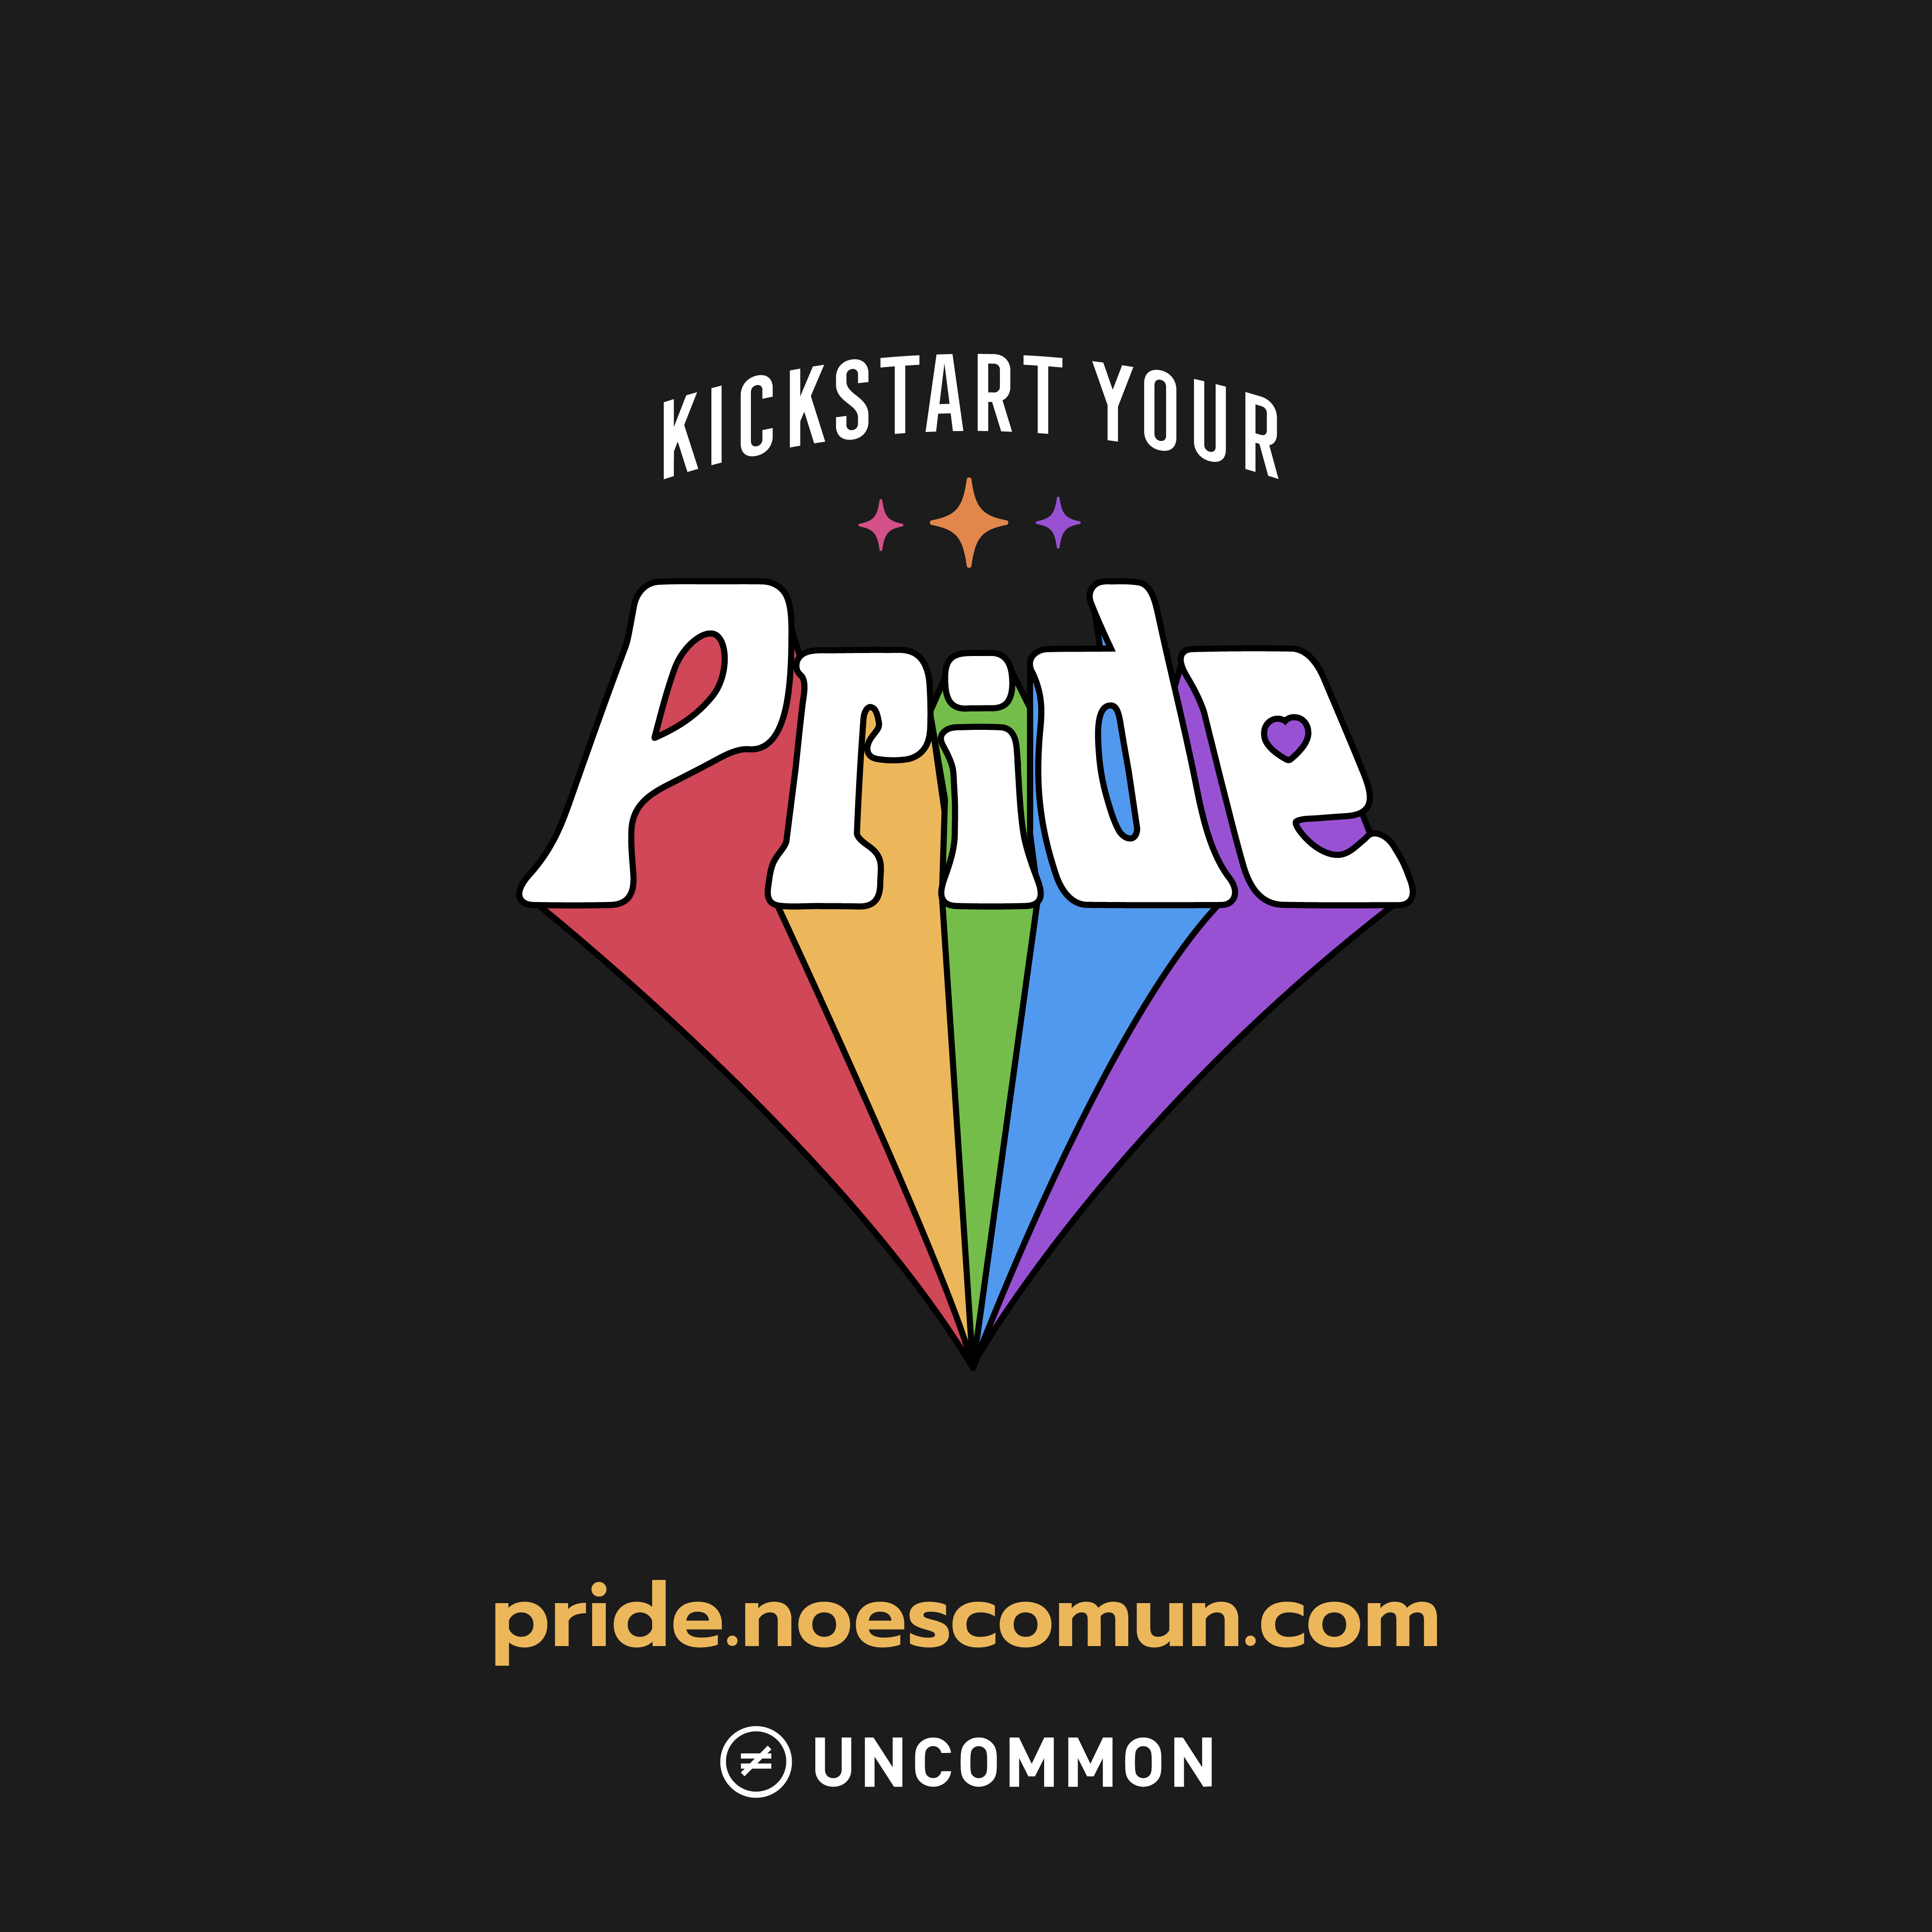 Colaboración con Uncommon: Kickstart your pride